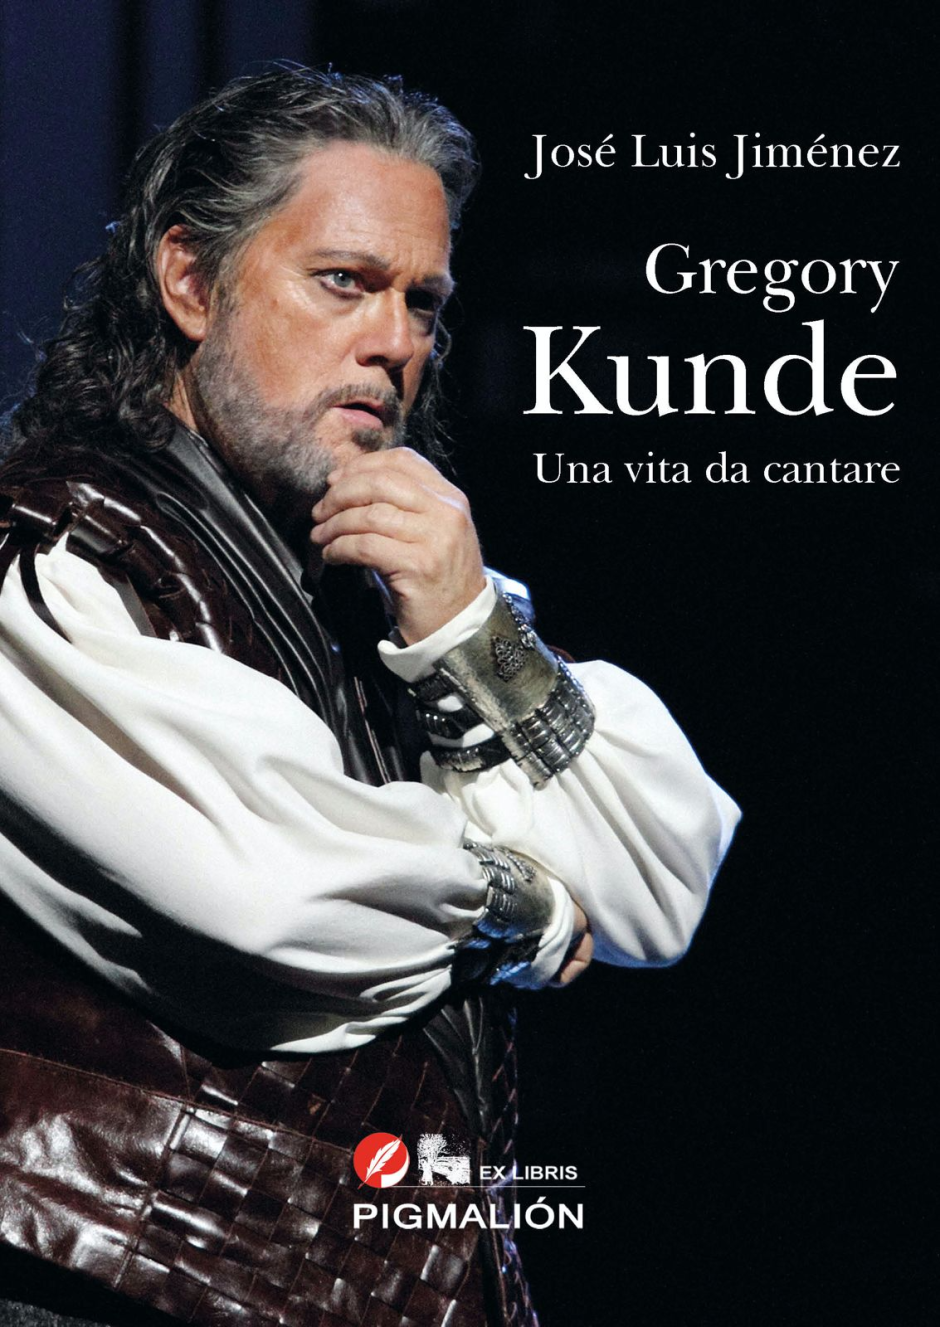 Biografía de Kunde en su edición italiana, que acaba de publicarse